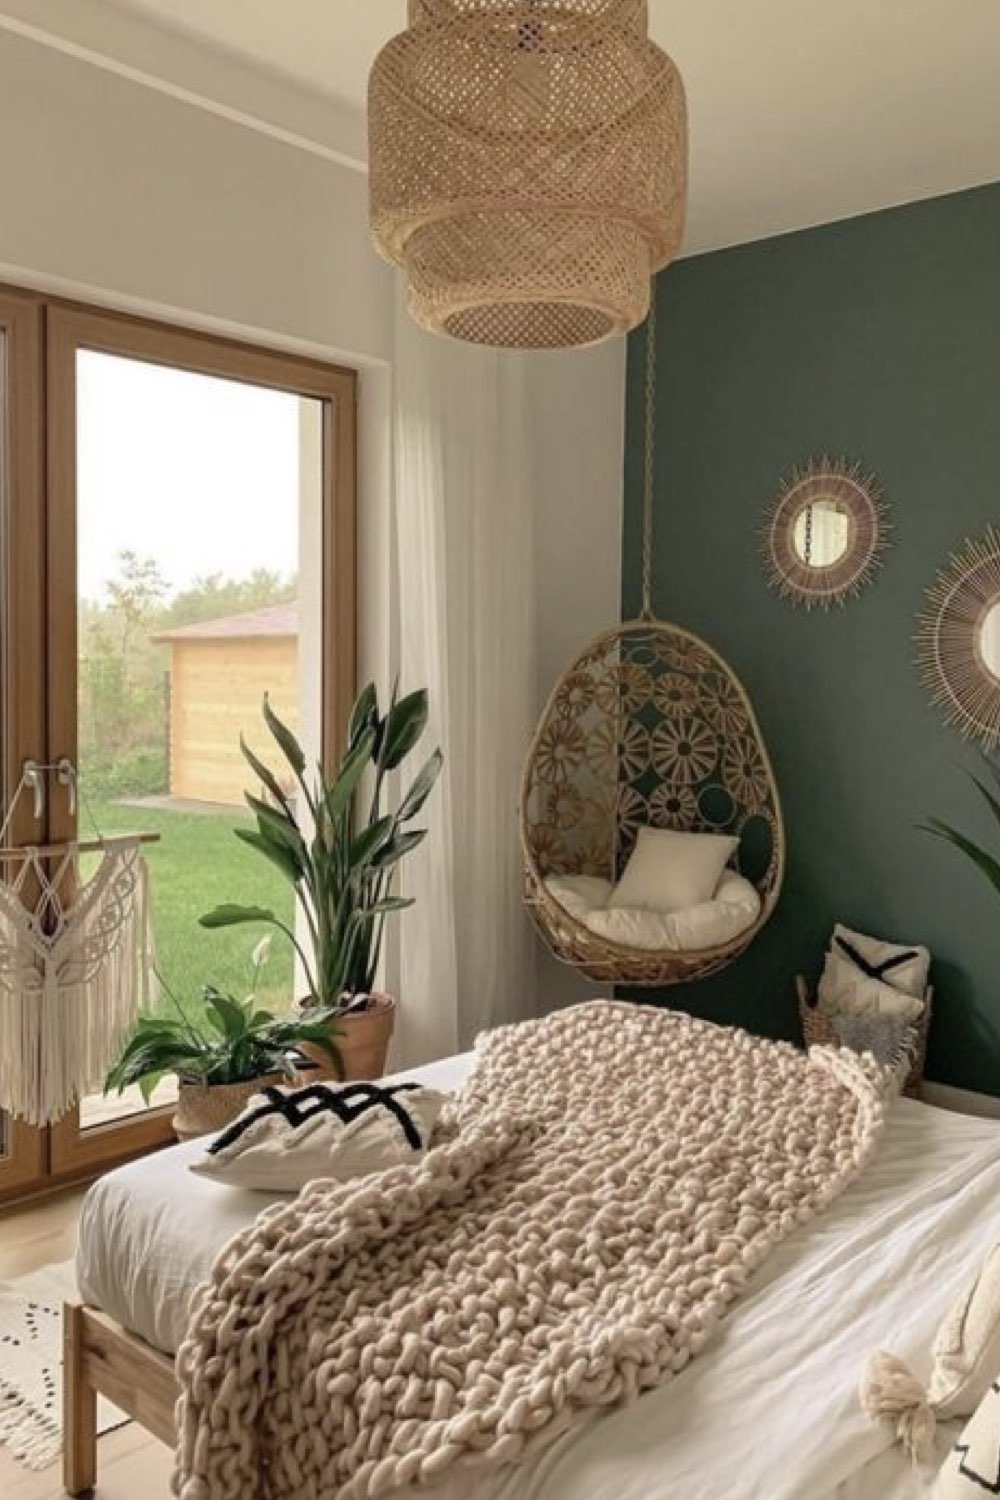 chambre adulte decoration reussie exemple angle de la pièce fauteuil bohème suspendu décor nature couleur vert sauge et blanc rotin